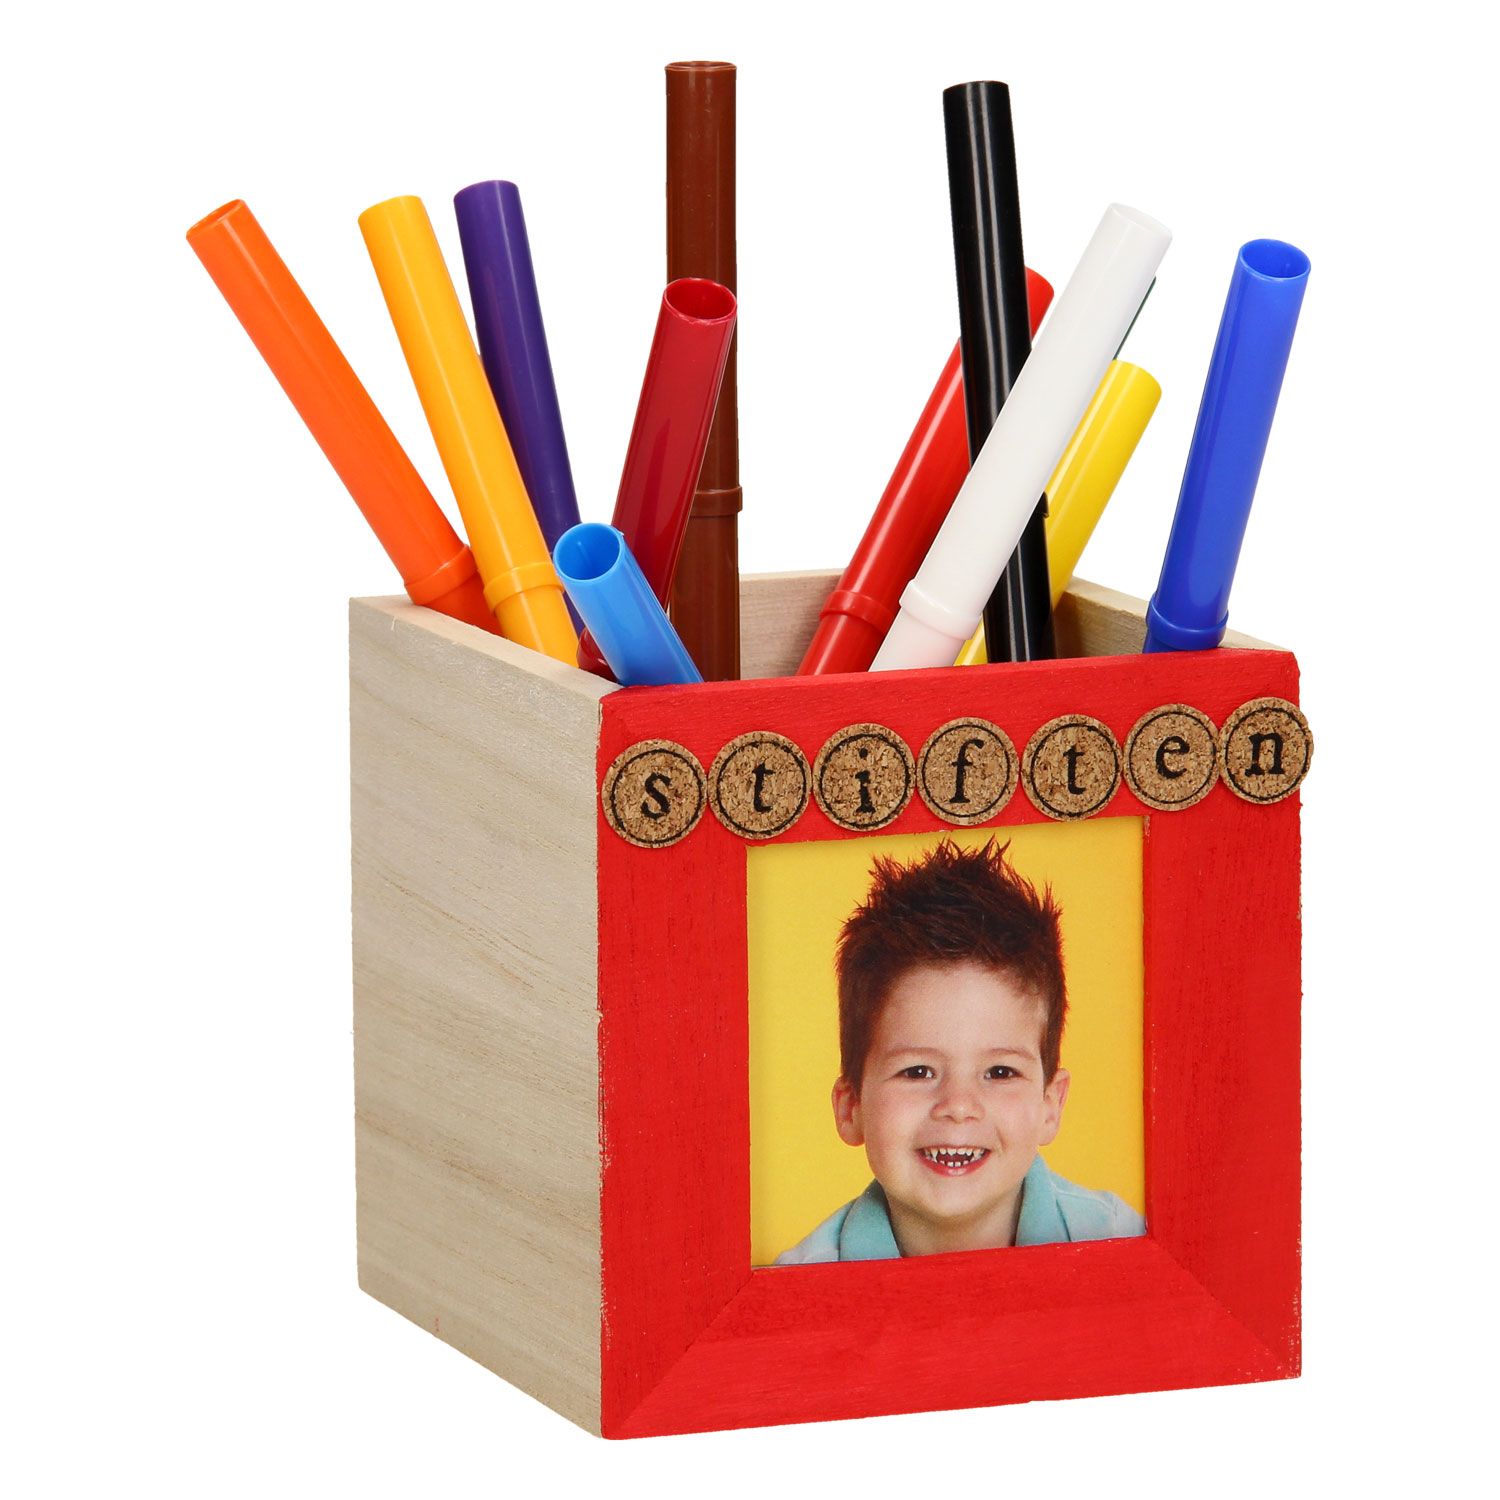 Décorez votre propre boîte à crayons en bois (cadre photo)